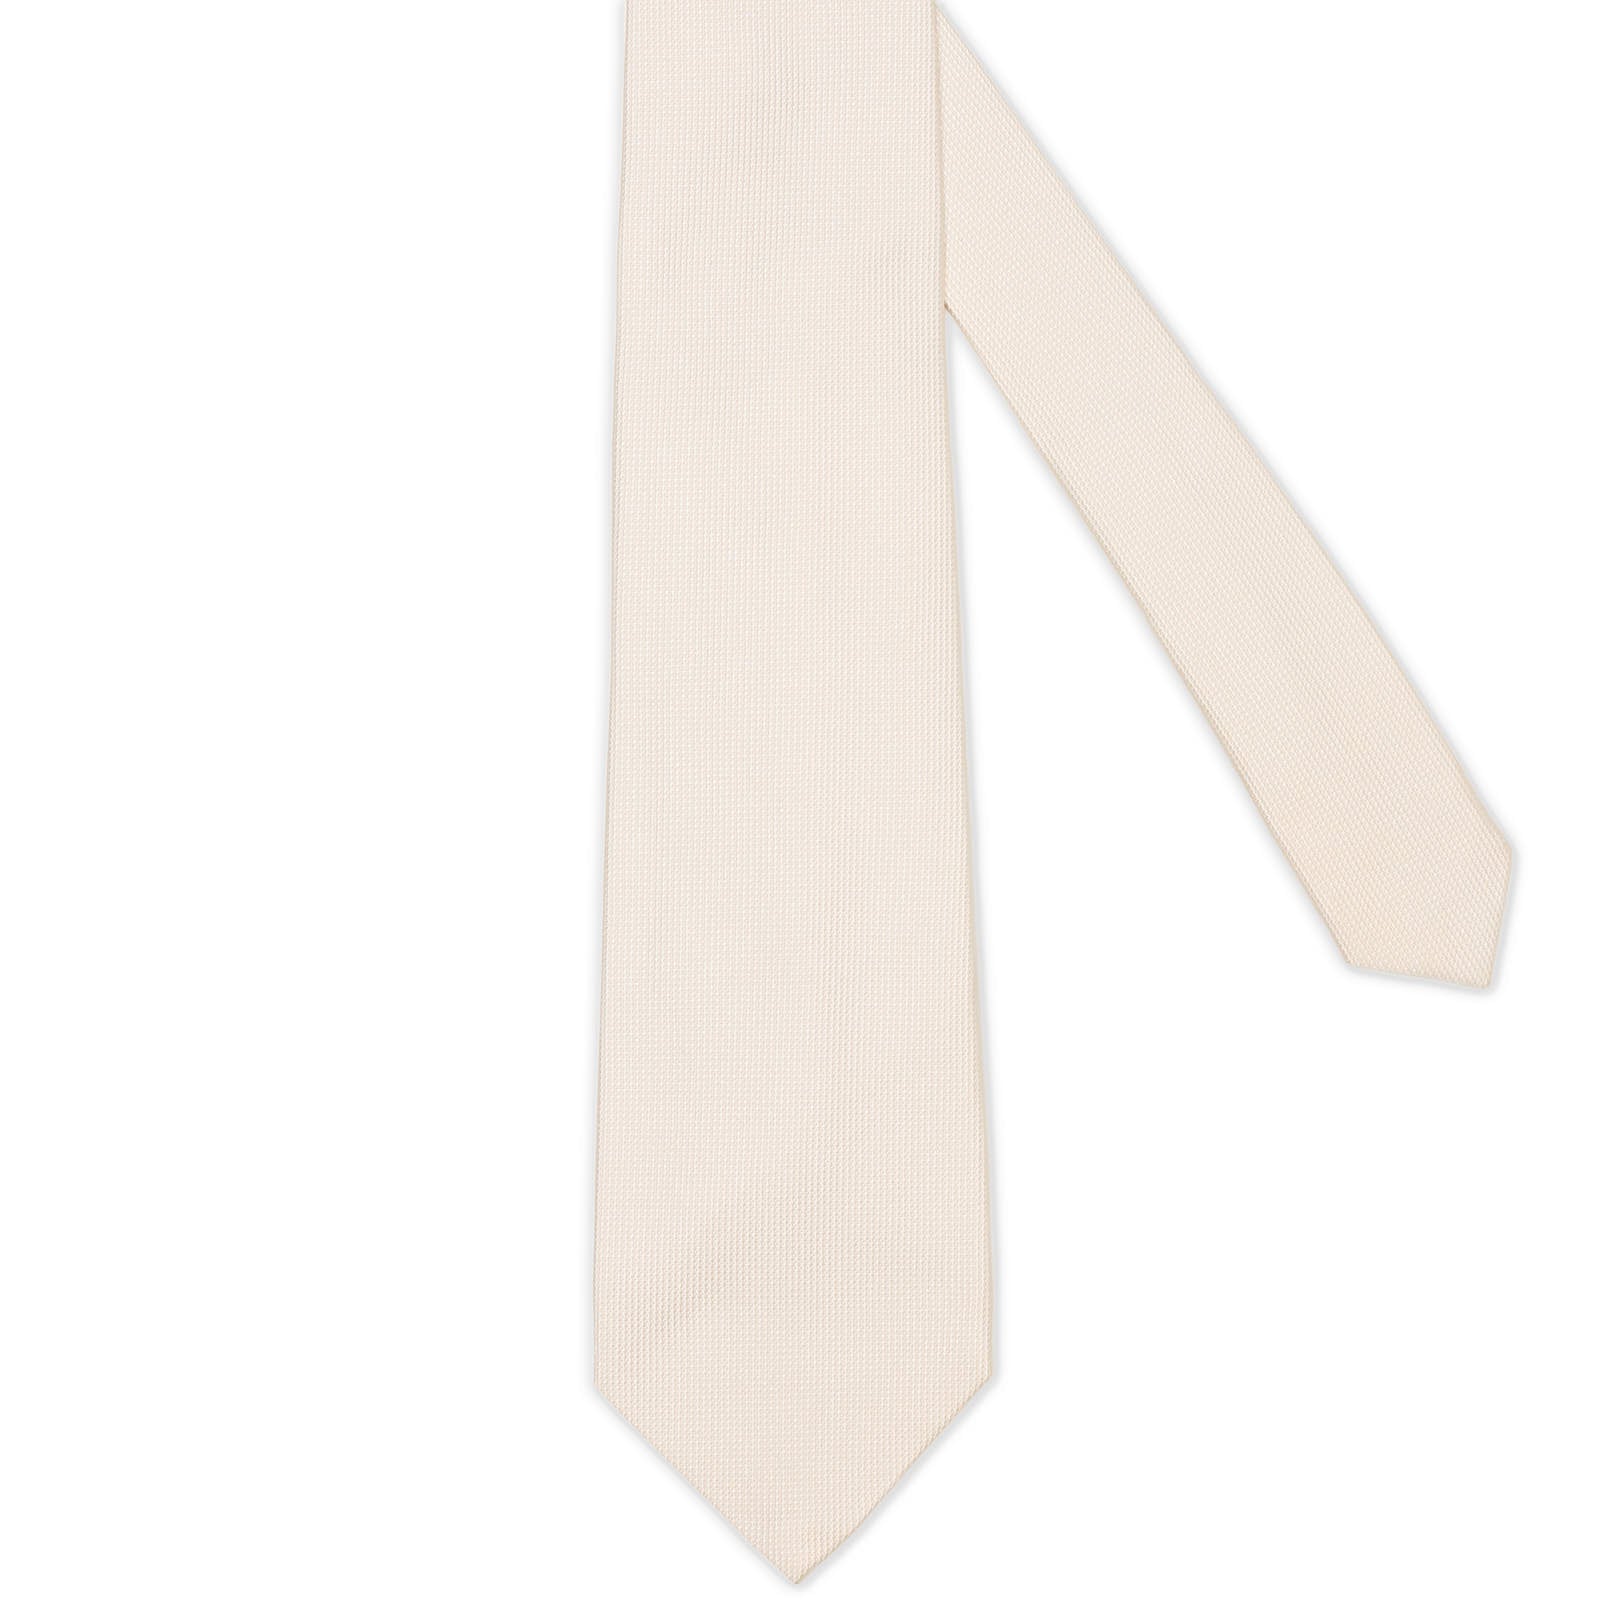 SARTORIA PARTANOPEA White Micro Seven Fold Silk Tie NEW